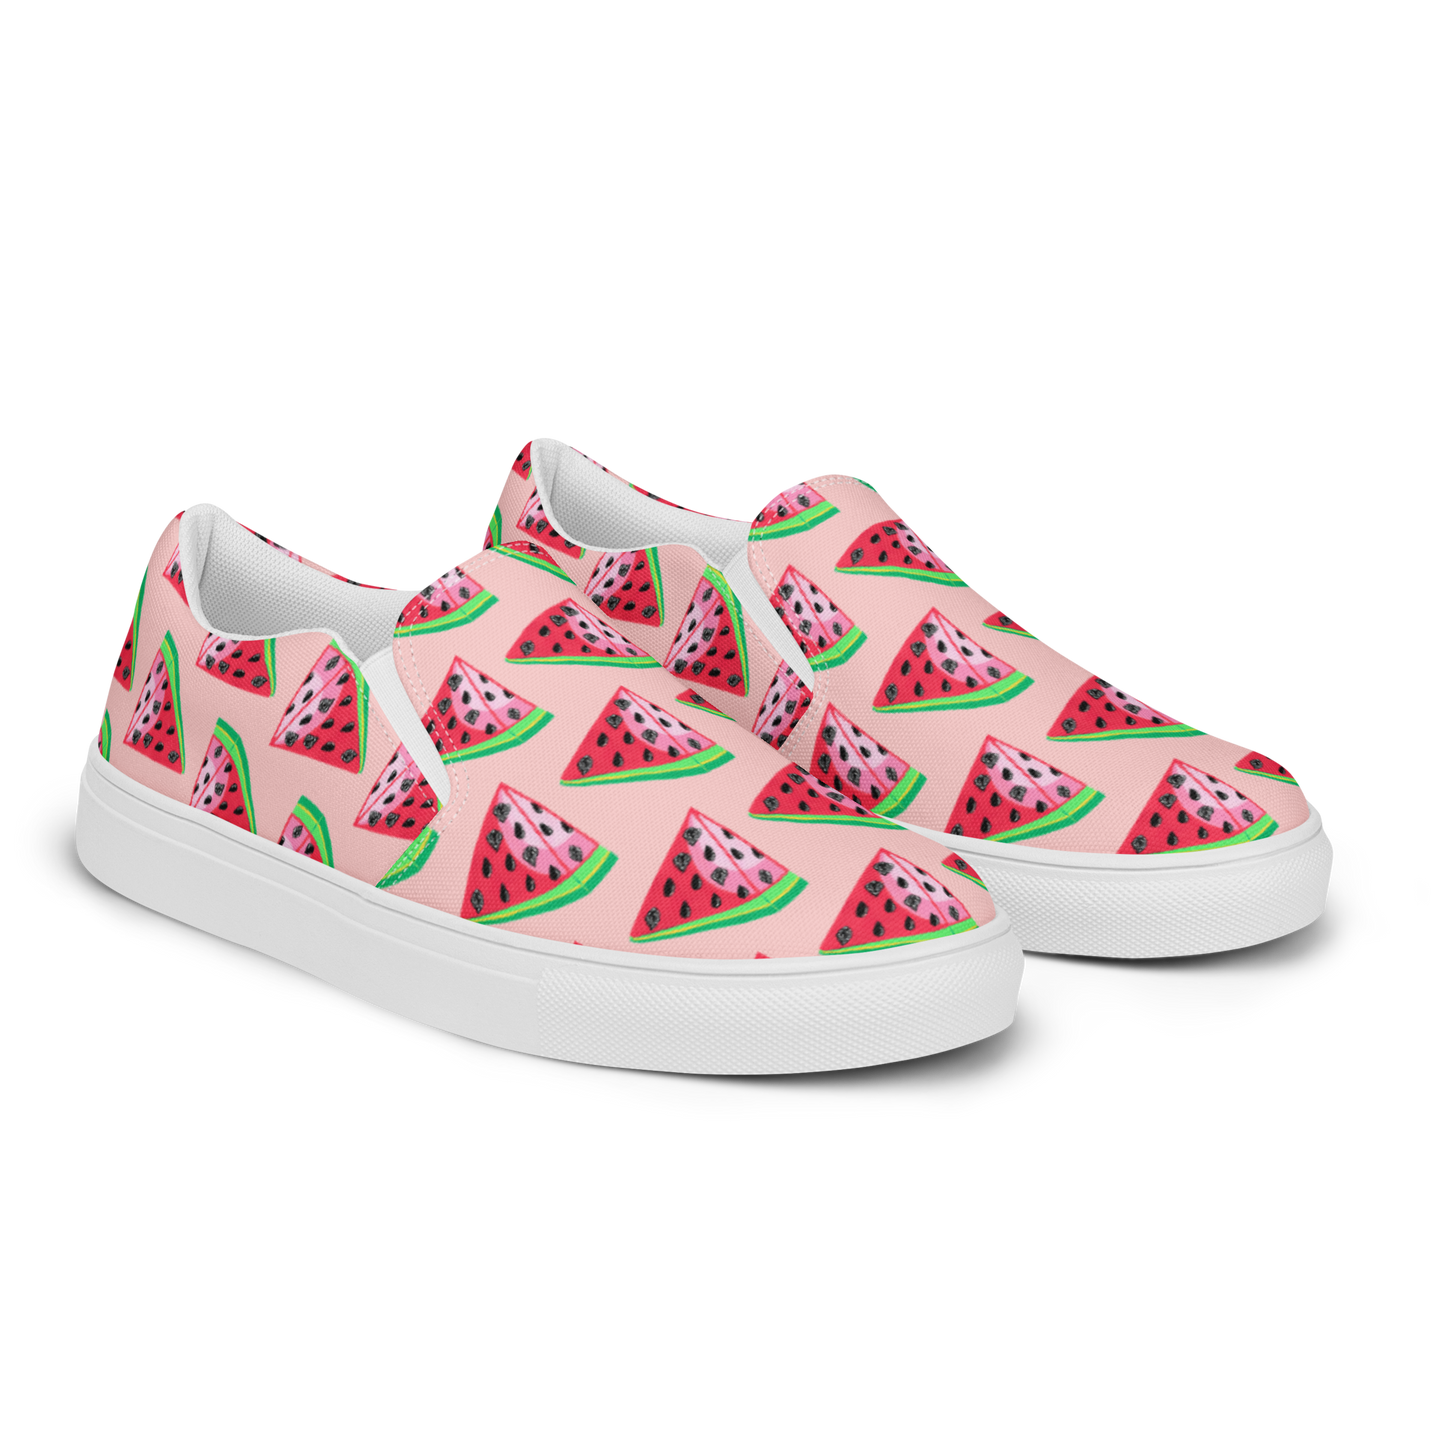 TWAT-ermelon pink Women’s slip-on canvas shoes